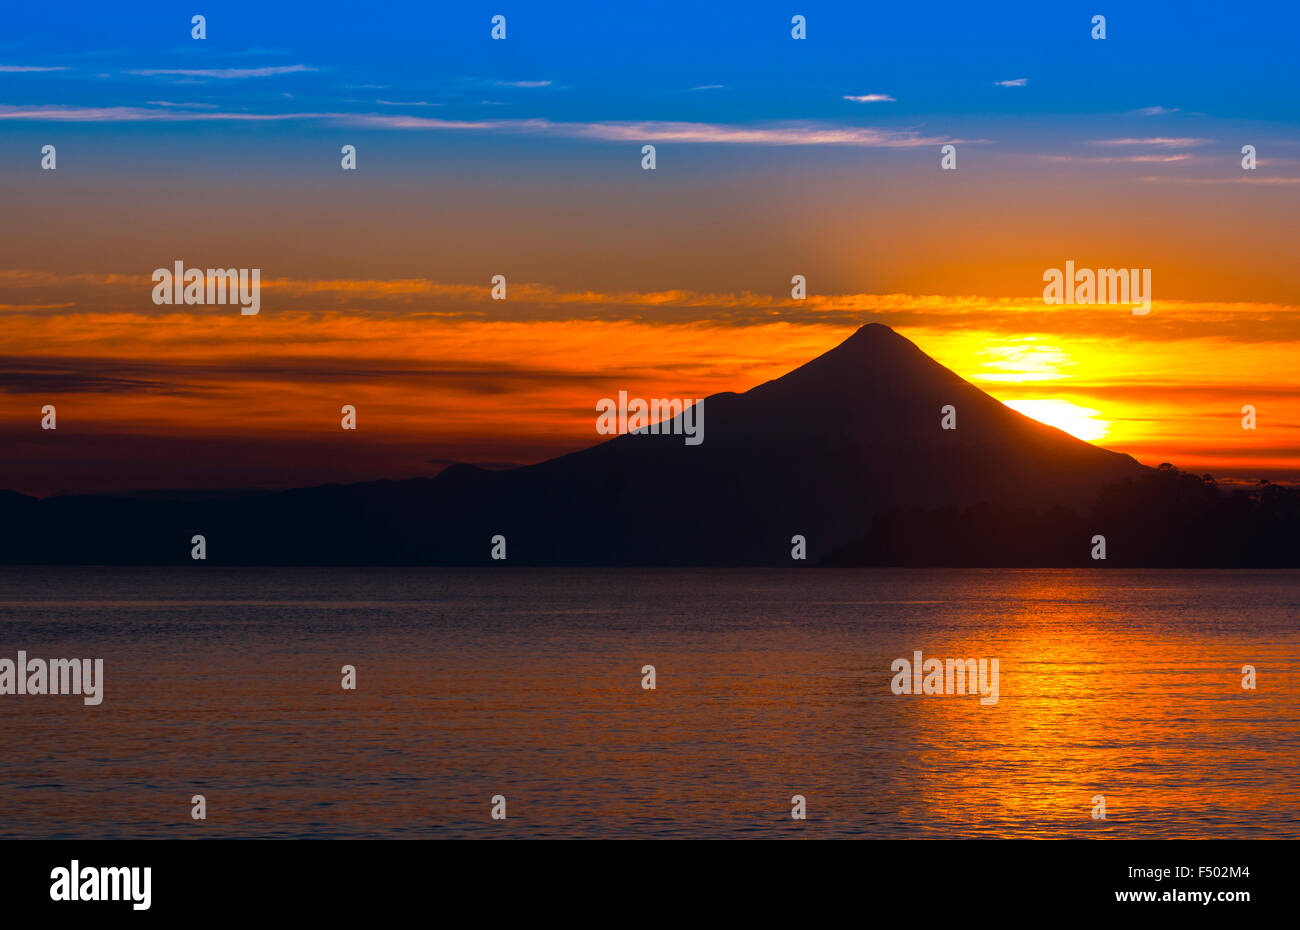 Volcan Osorno, Lago llanquihue, chile. Region de los Lagos. Osorno Volcano Stock Photo